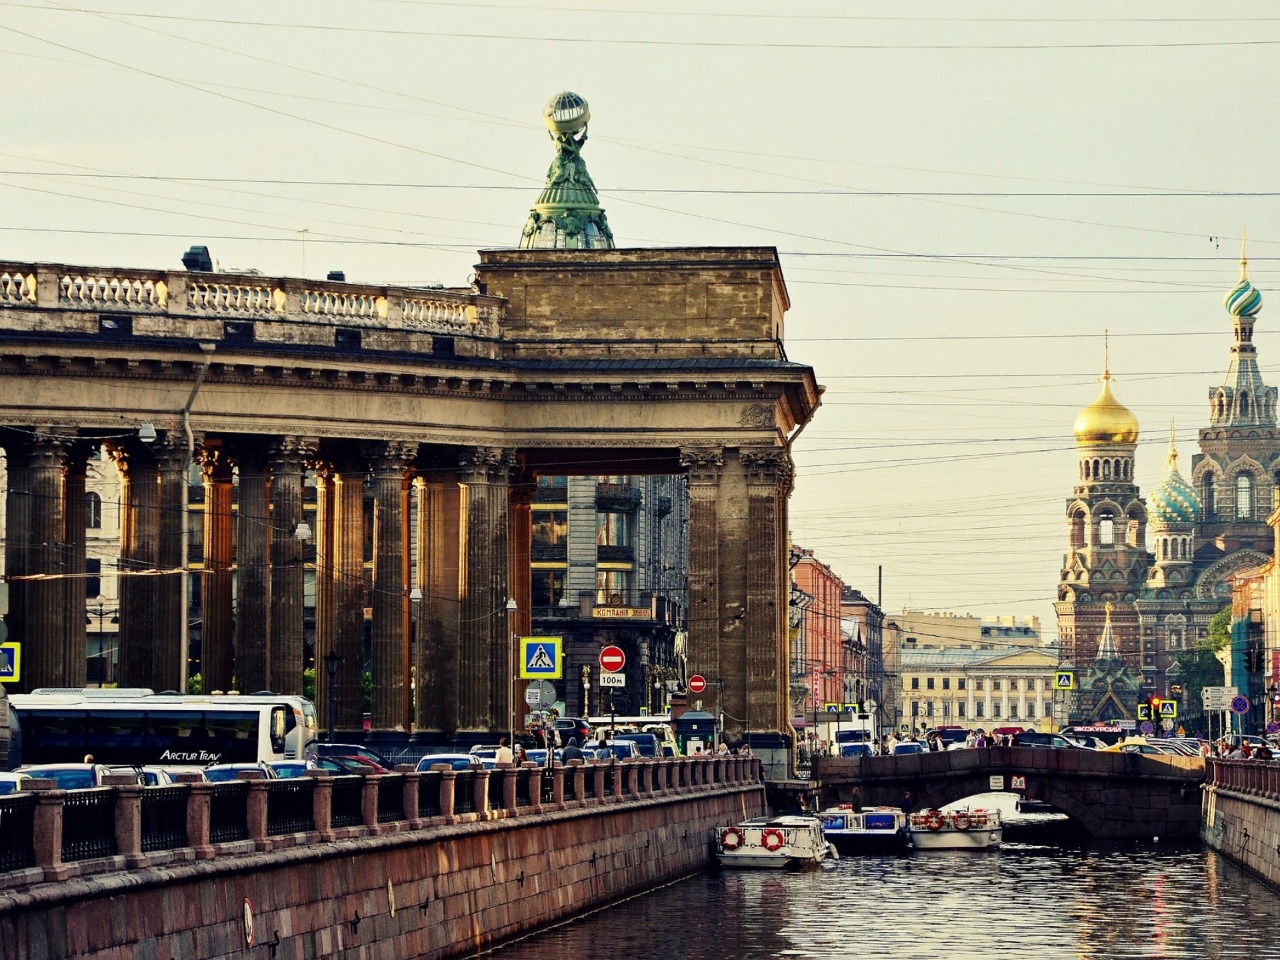 Пешком по Петербургу | Цена 5500₽, отзывы, описание экскурсии